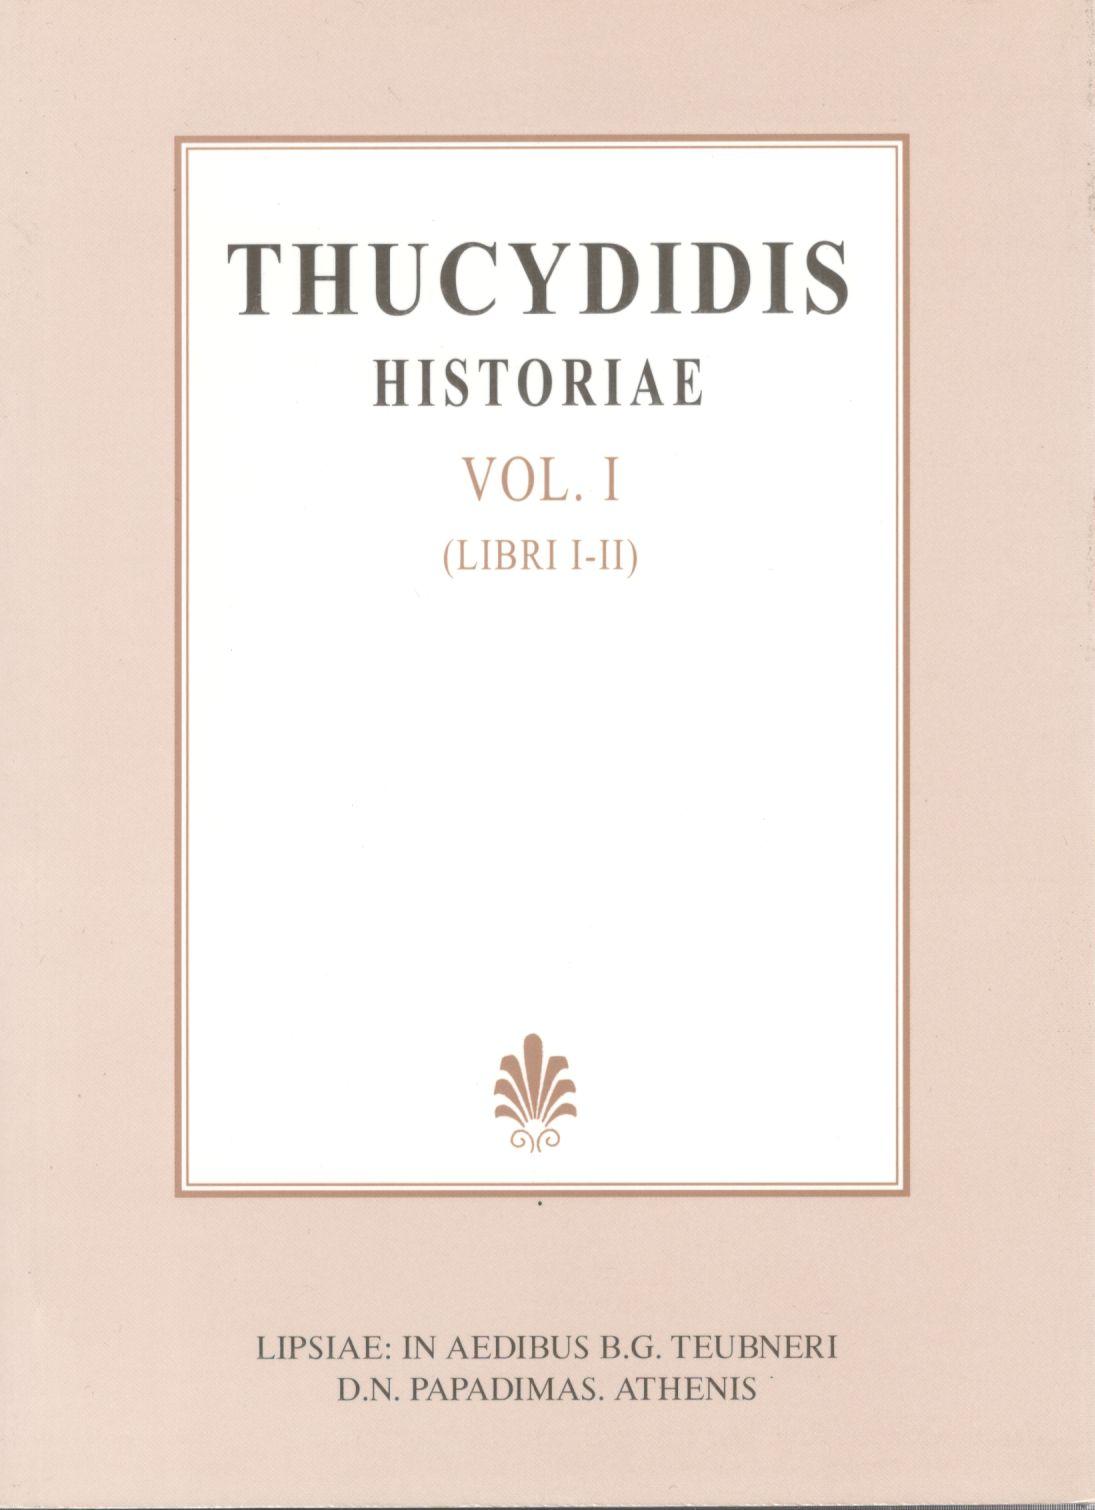 THUCYDIDIS, HISTRIAE, VOL. I, LIBRI I-II (ΘΟΥΚΥΔΙΔΟΥ, ΙΣΤΟΡΙΑΙ, Τ. Α